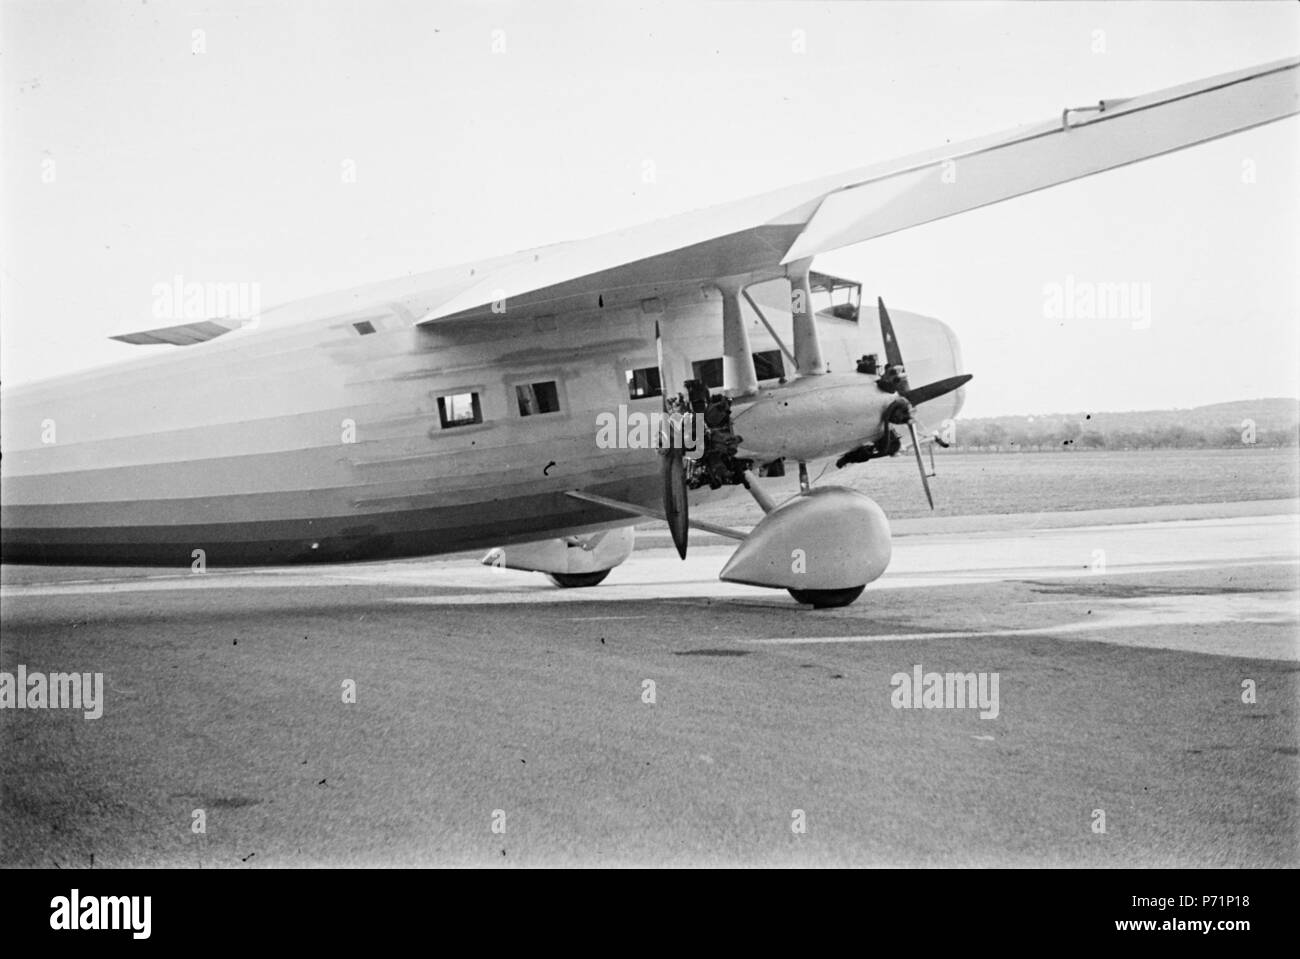 Erstflug: 17.8.31. 1932 Vergleich mit der Ju-52 anl�lich eines Alpenflugs in der Schweiz, 'outclassed  durch die Ju-52, Projekt nicht weiter verfolgt 34 Dornier Do K ETH-BIB-Flugzeug am Boden-Inlandflüge-LBS MH05-72-09 Stock Photo